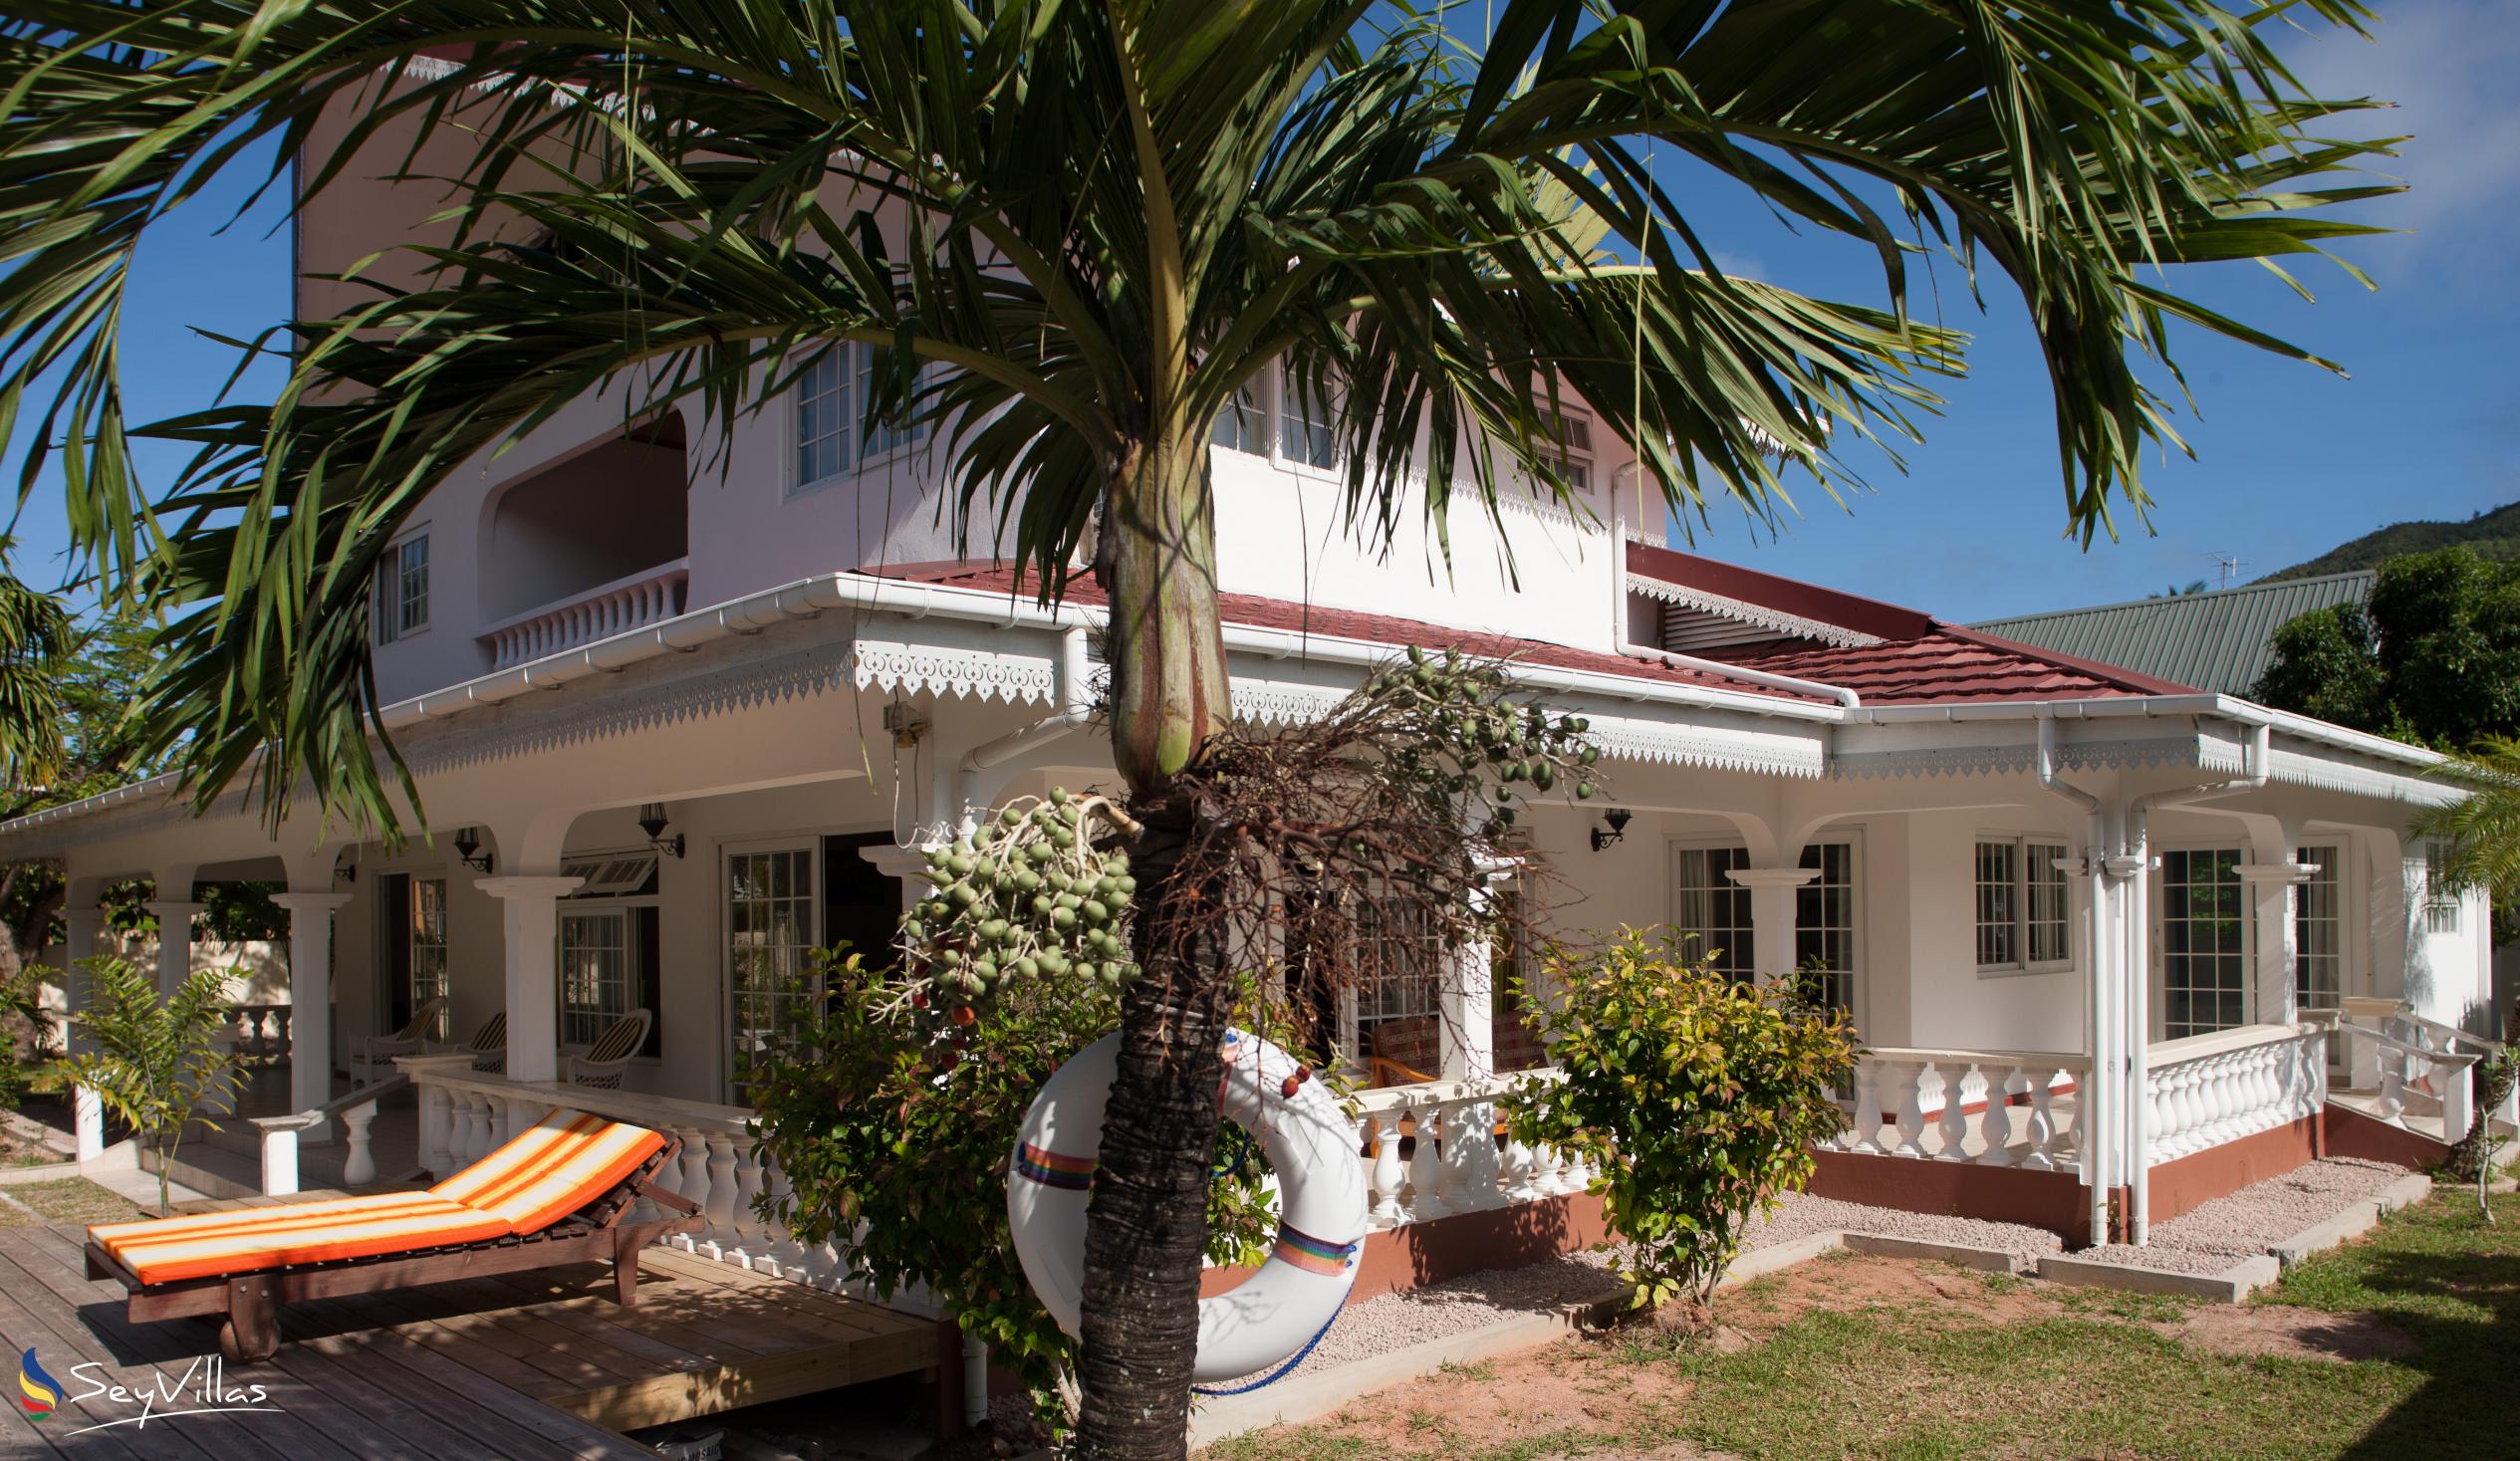 Photo 5: Villa Confort - Outdoor area - Praslin (Seychelles)